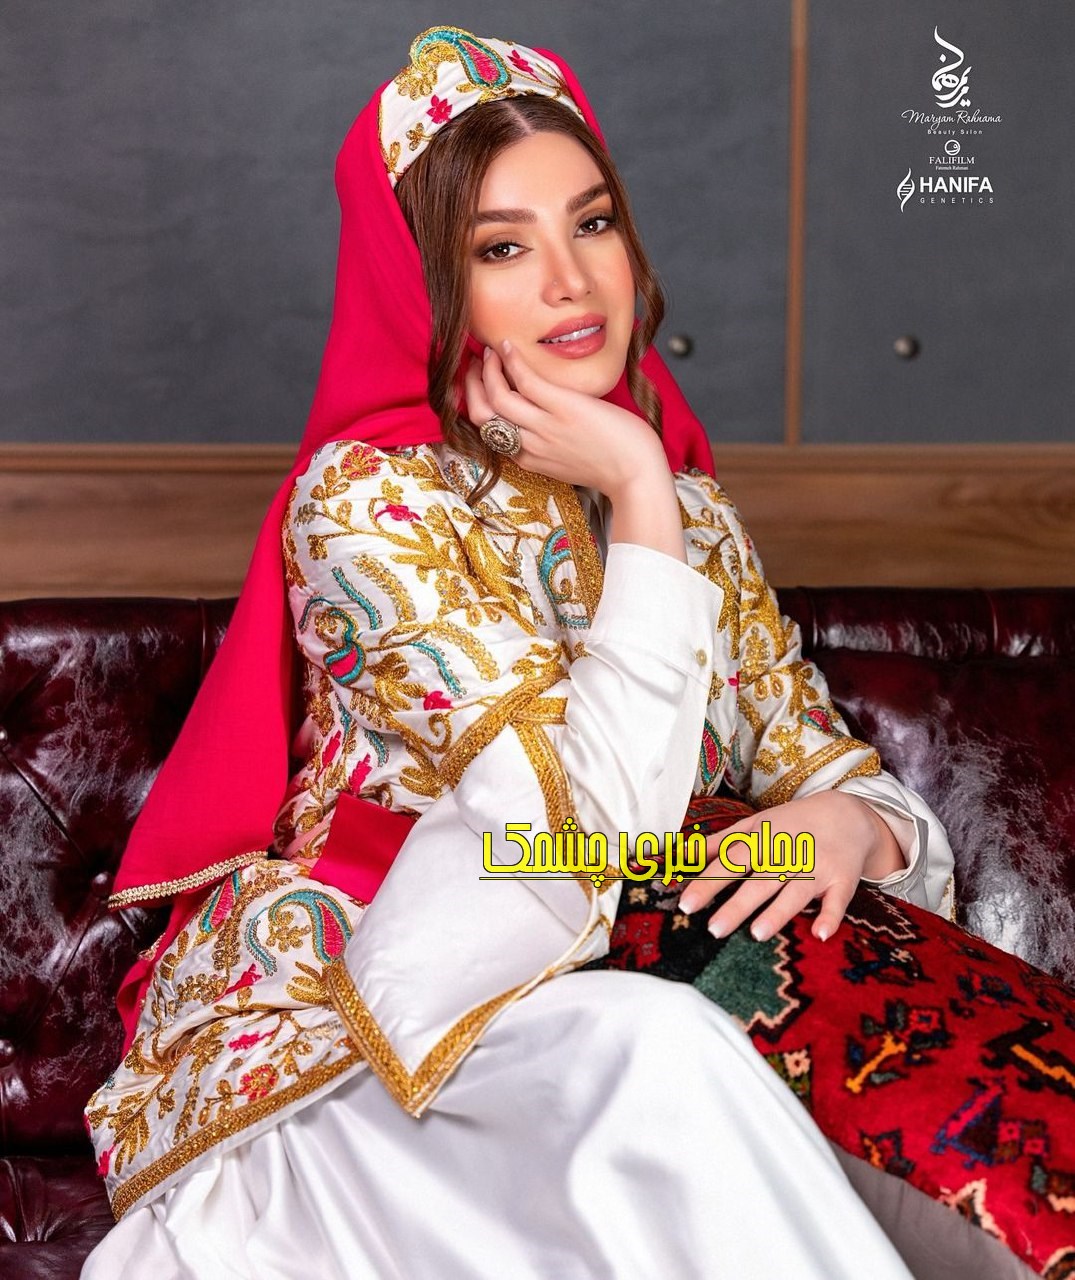 تغییر چهره متین ستوده بازیگر نقش ترانه “سریال لیسانسیه ها”در پروژه دختران ایران+عکس های جذاب با لباس سنتی